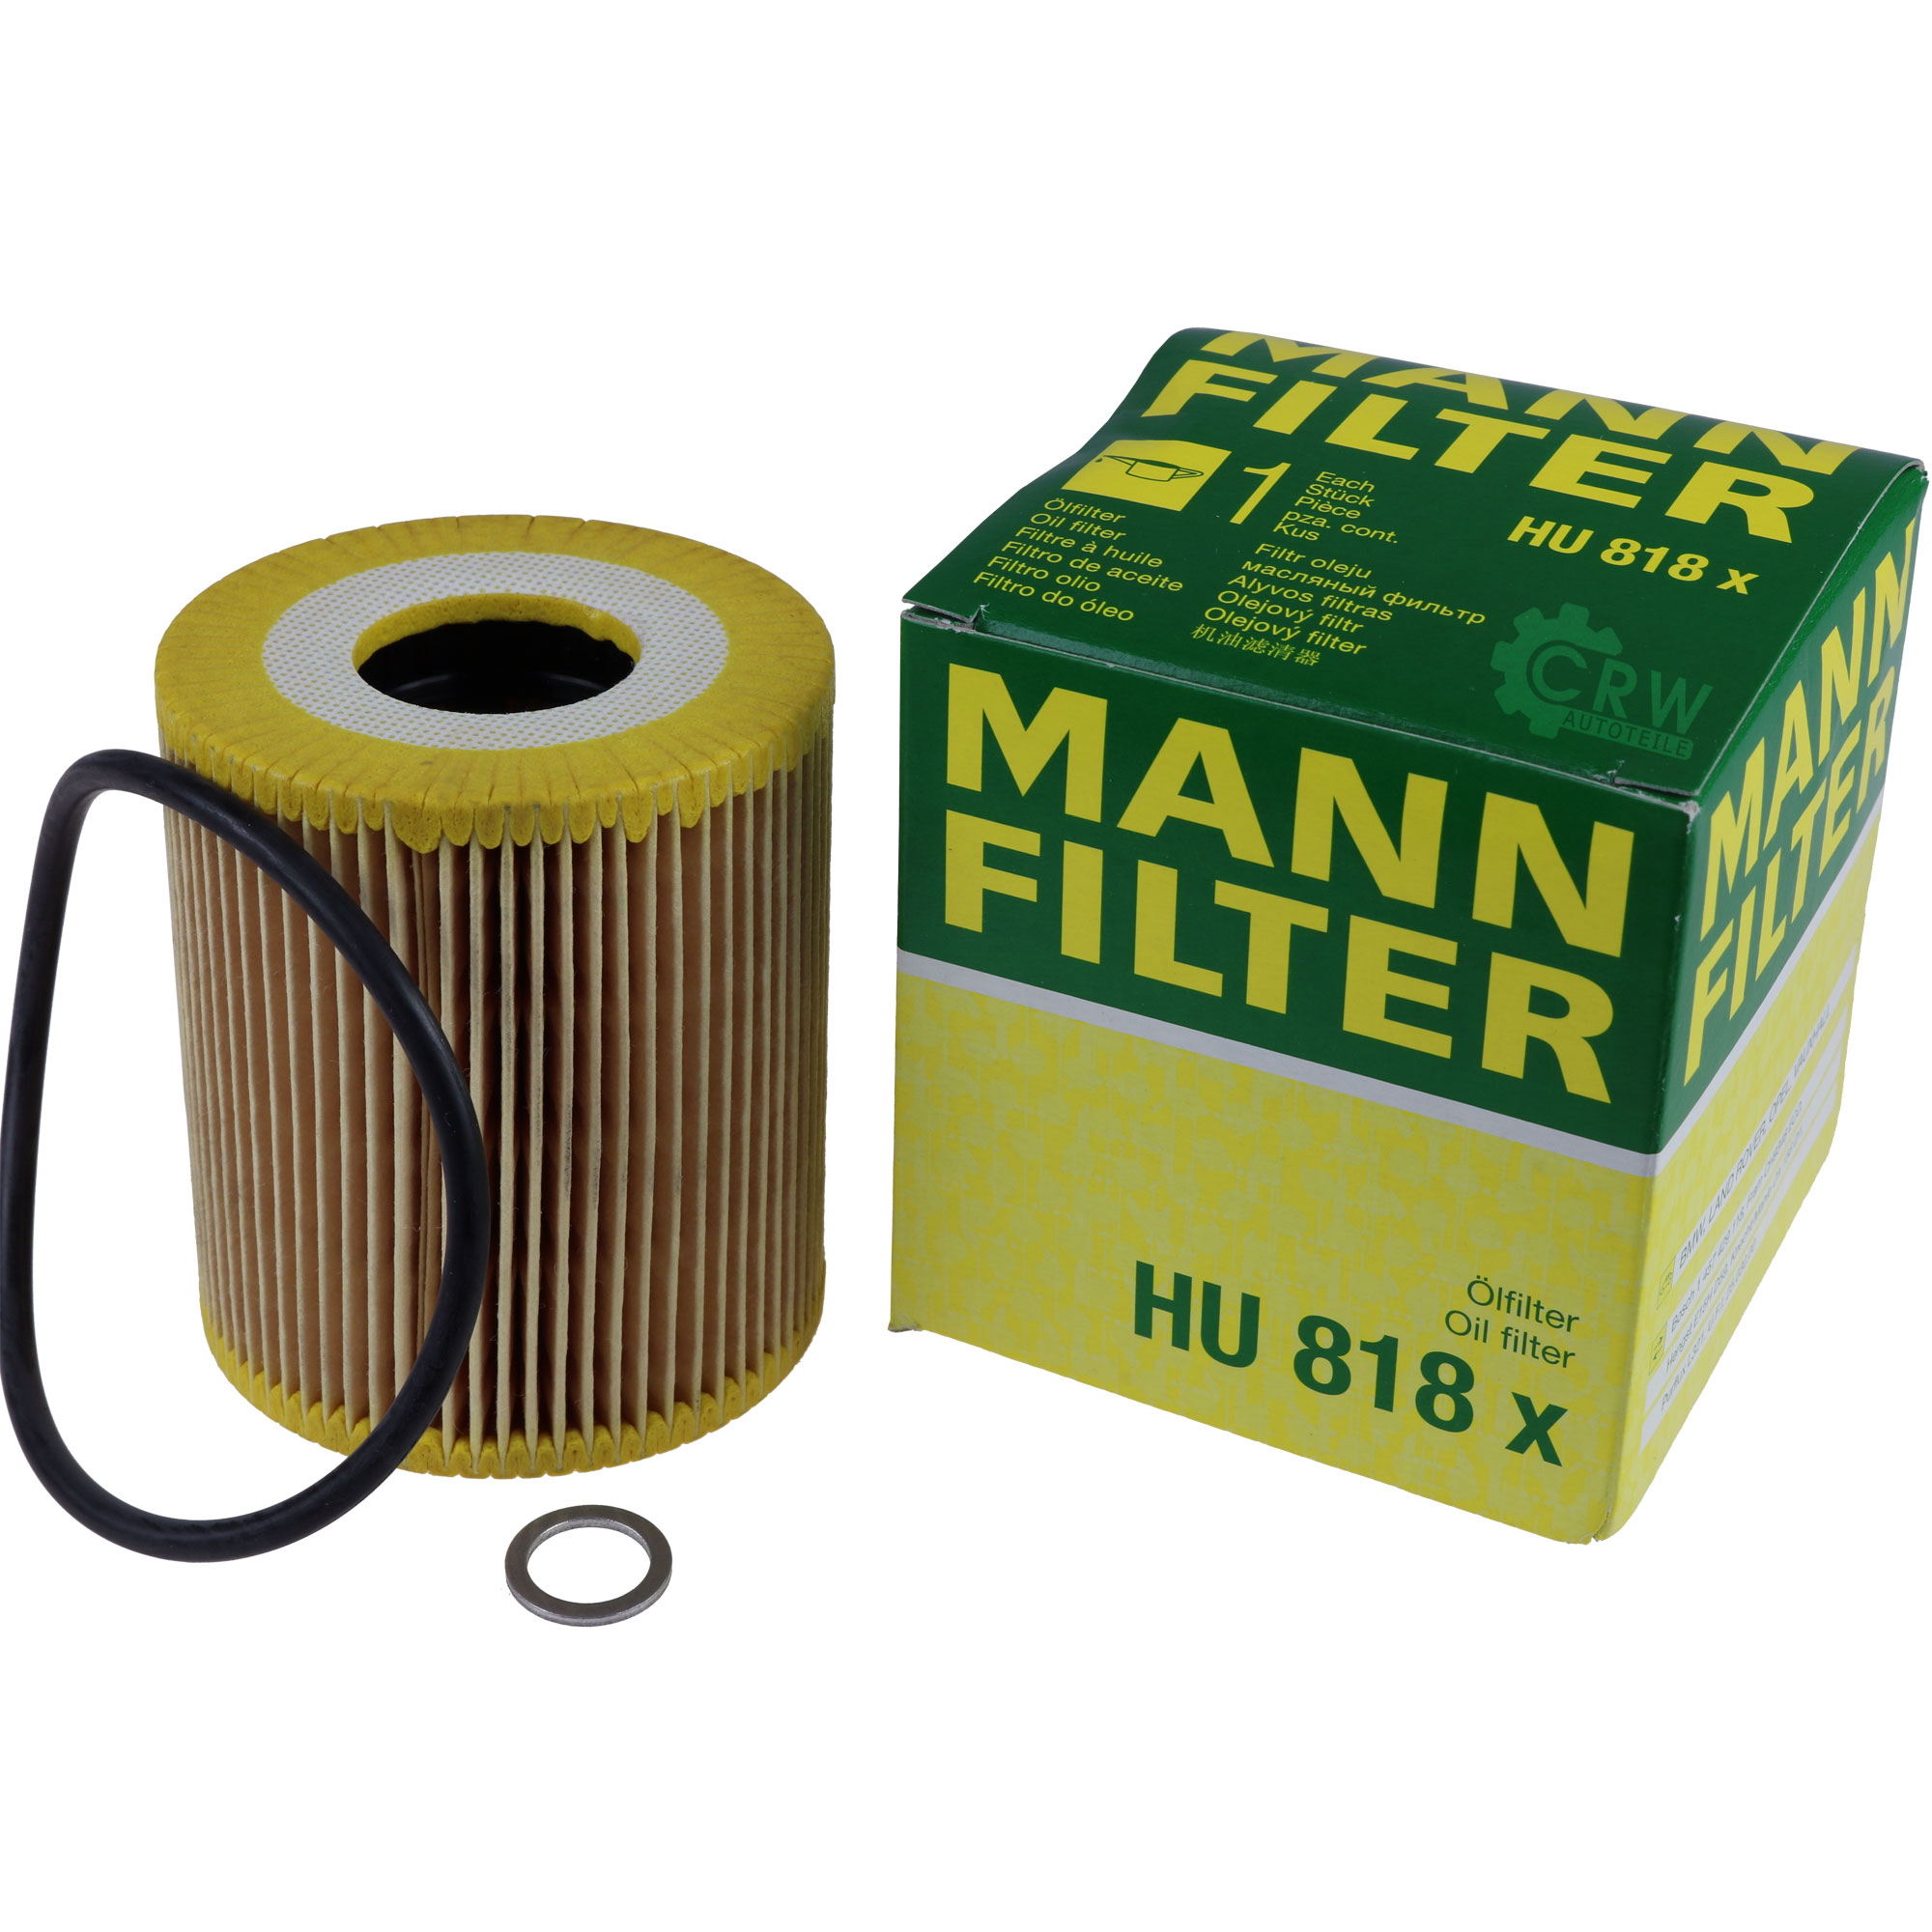 MANN-FILTER Ölfilter HU 818 x Oil Filter